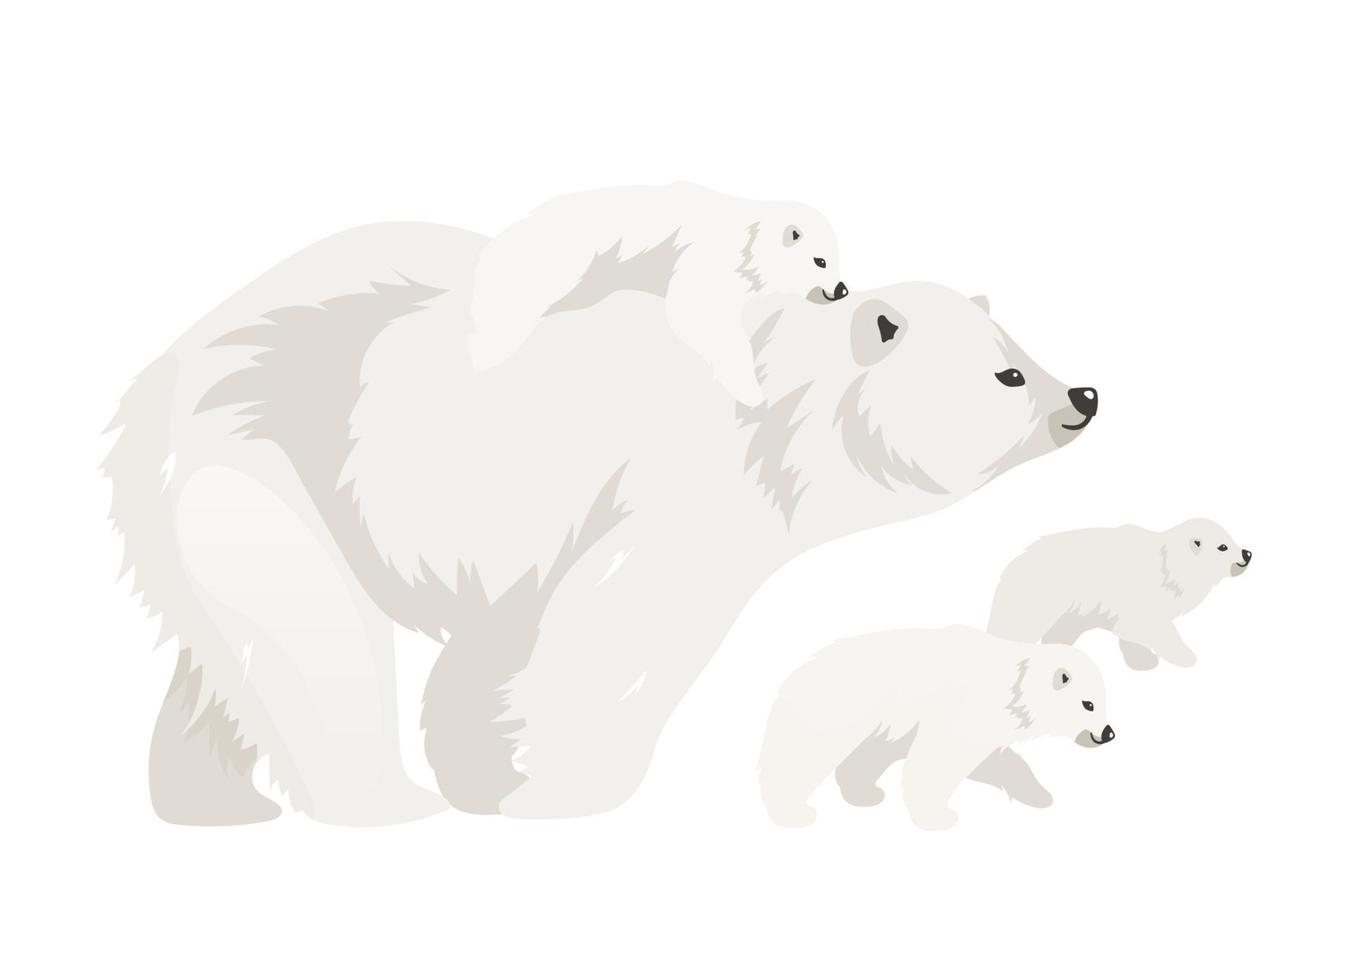 Eisbärfamilie flache Farbvektorillustration. Nördliche wilde erwachsene Kreatur wandelnde Jungen. Meeressäugermutter mit Baby. arktisches Tier isolierte Zeichentrickfiguren auf weißem Hintergrund vektor